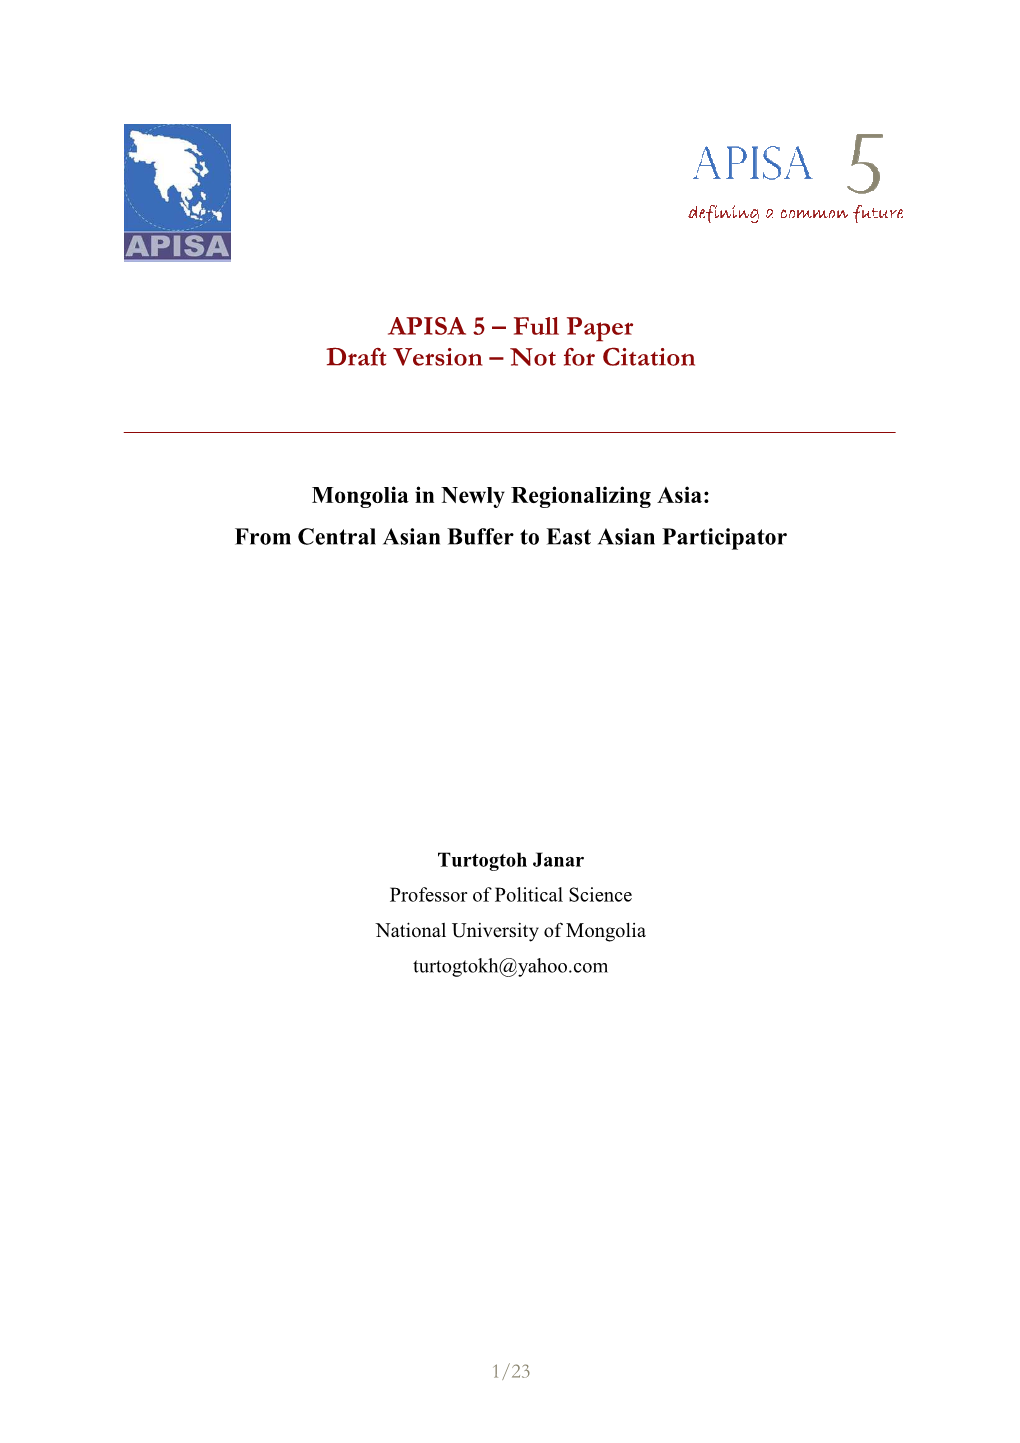 APISA 5 – Full Paper Draft Version – Not for Citation